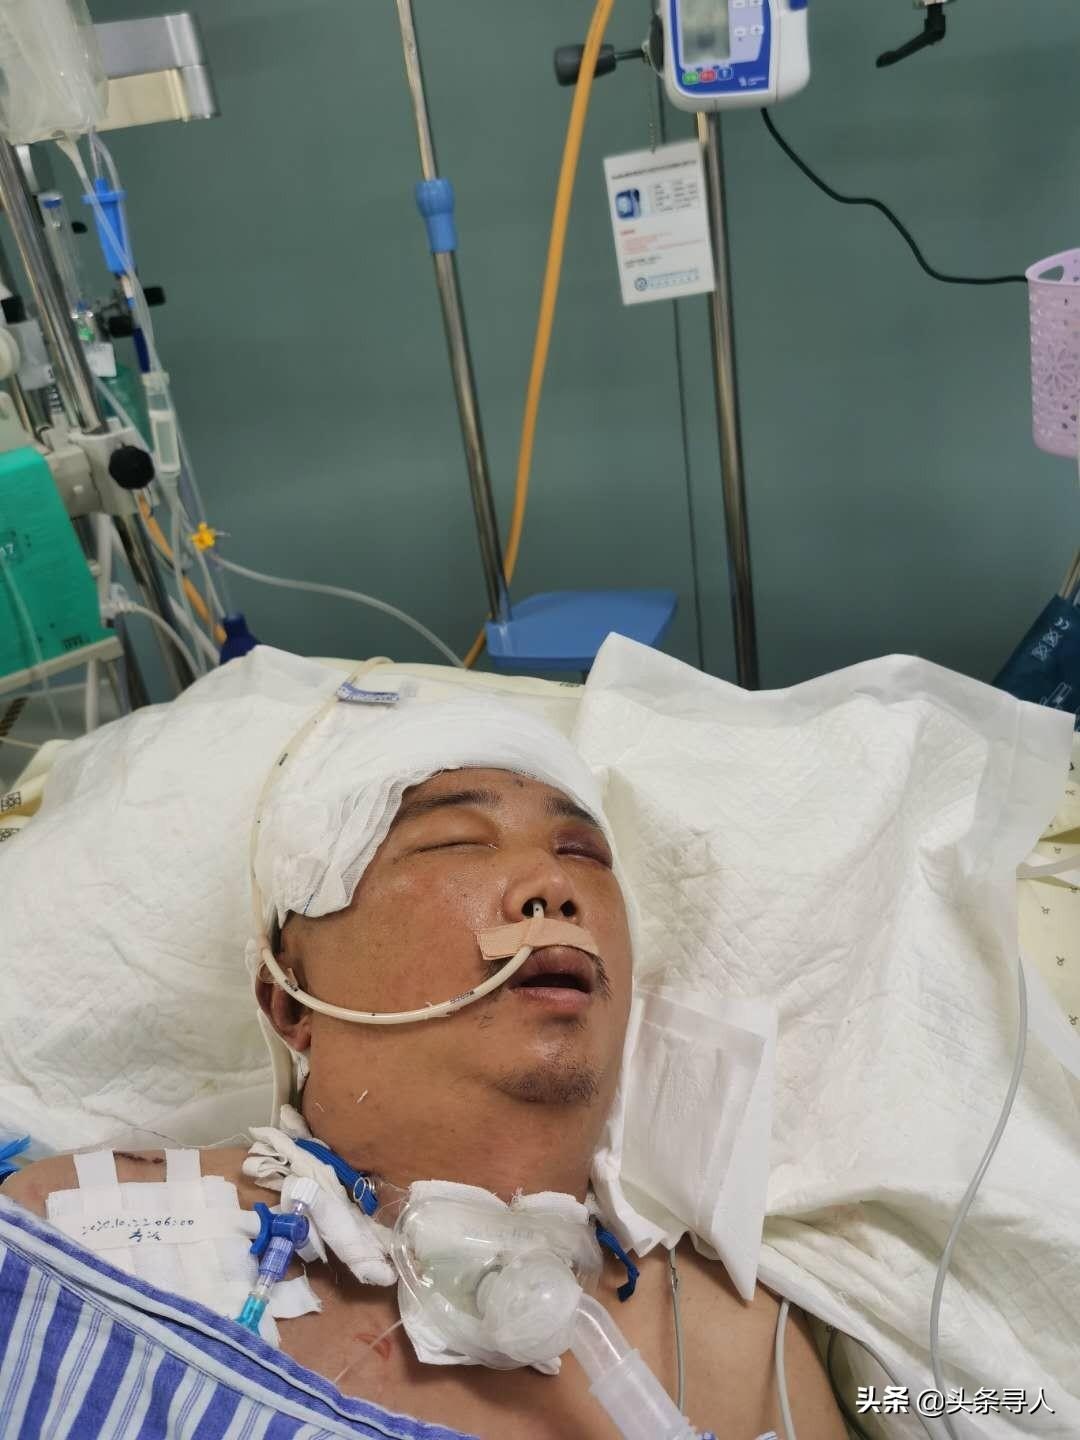 无名患者寻亲:郑州中年男子路边昏迷被送医,您认识他吗